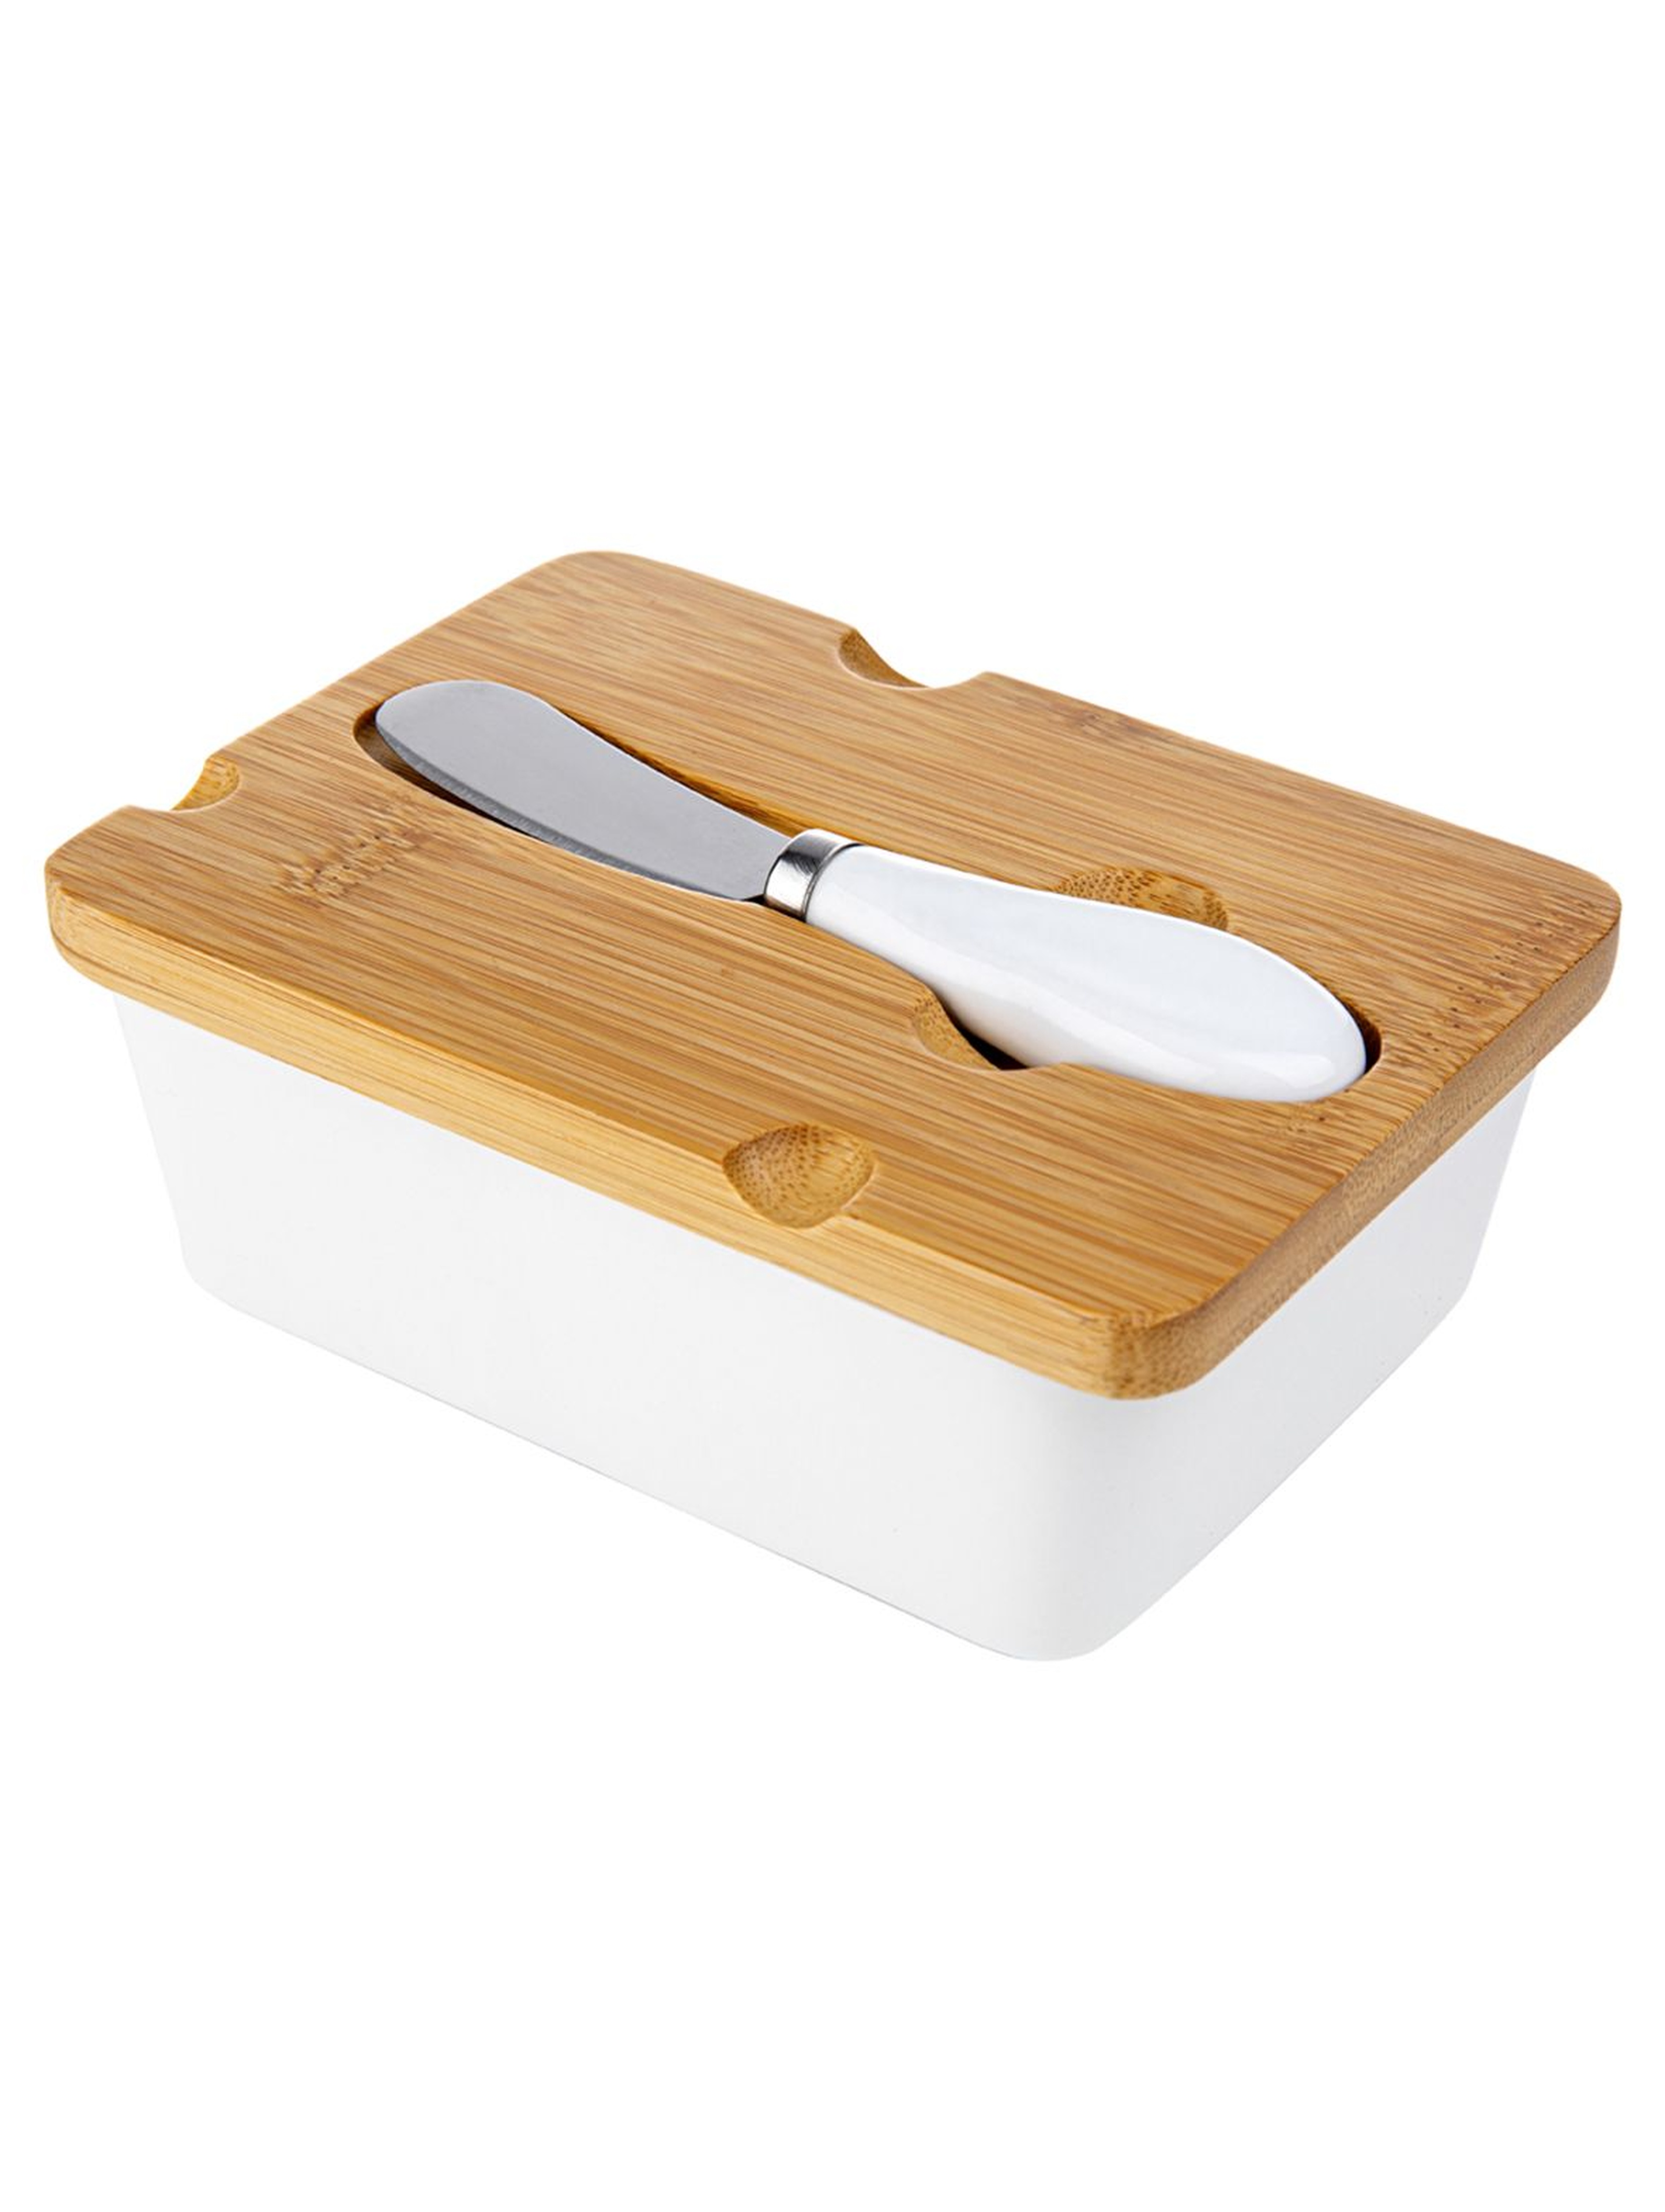 Maselnica z pokrywką i nożykiem Adria w kolorze białym 15,5x11 cm